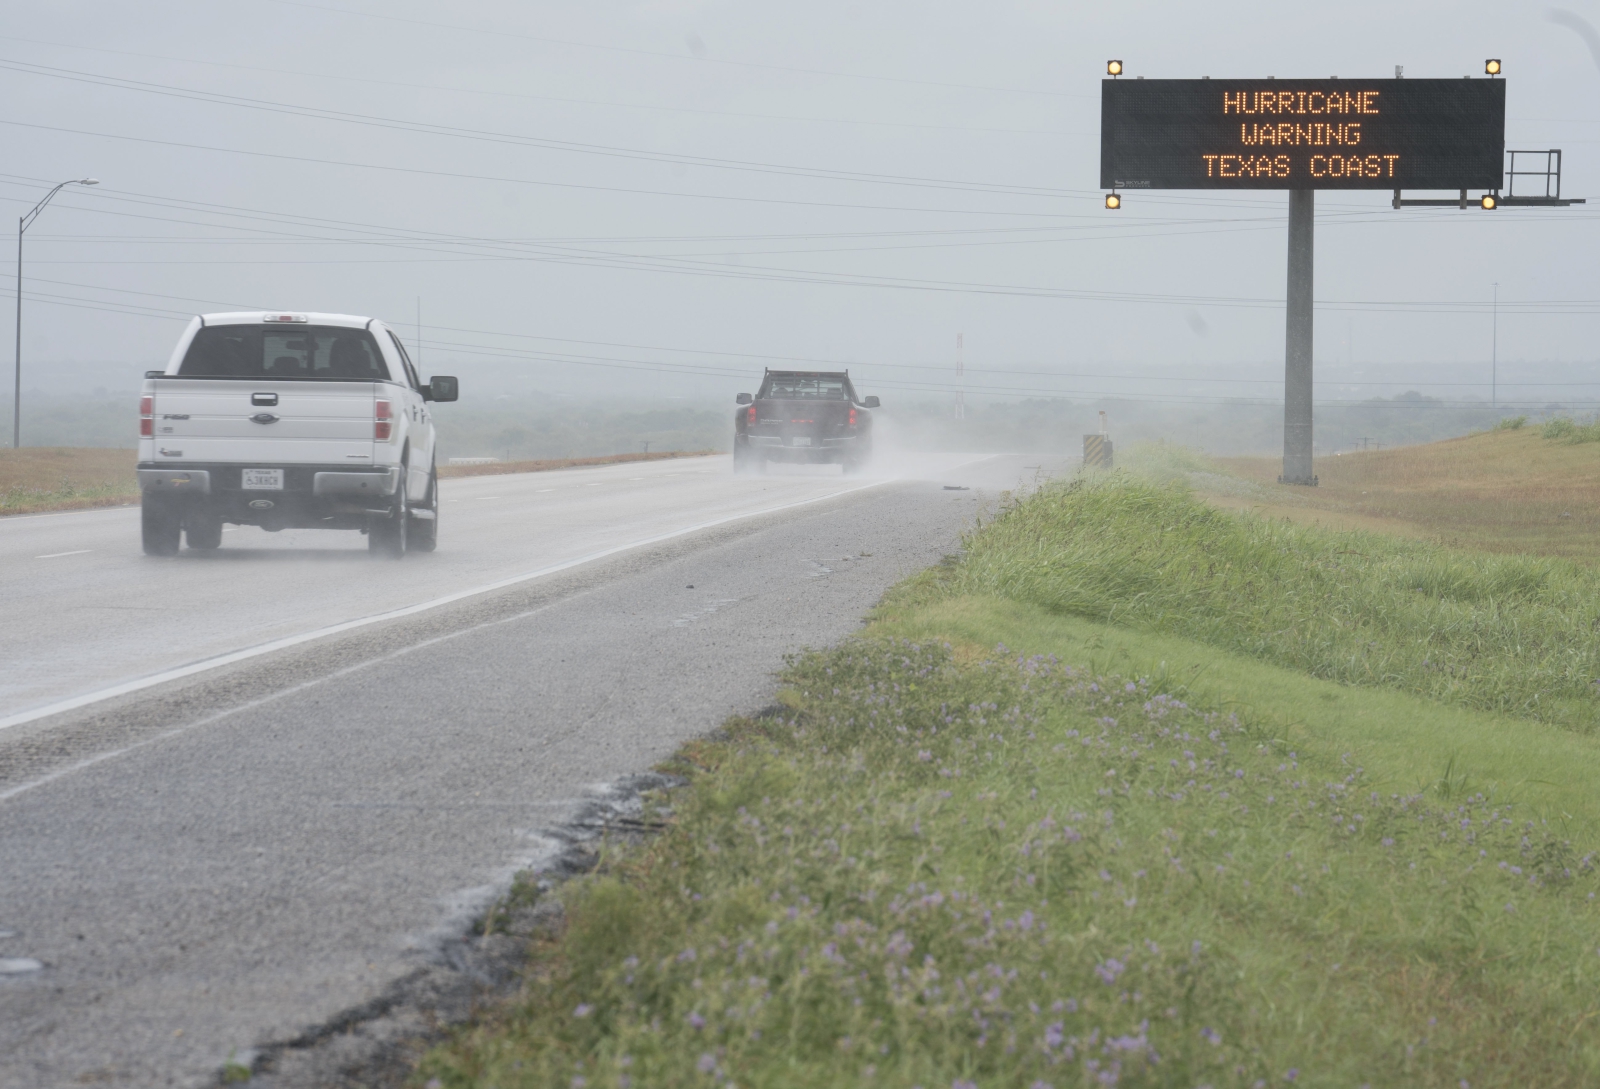 W Texasie pojawiają się już ostrzeżenia przed nadchodzącym huraganem Harvey.